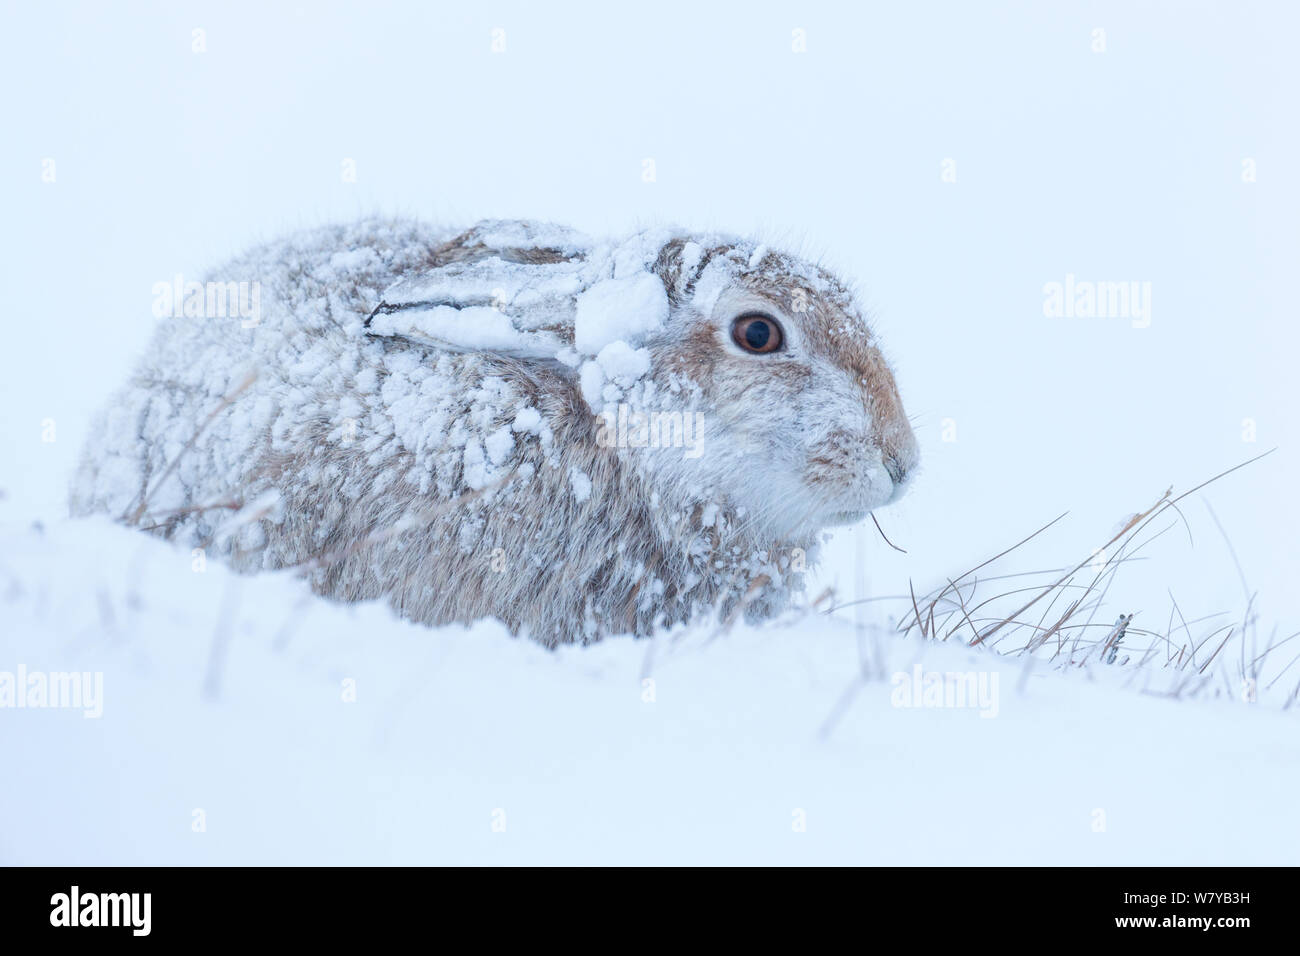 Lièvre variable (Lepus timidus) dans la région de fortes chutes de neige, le Parc National de Cairngorms, en Écosse. Janvier. Banque D'Images